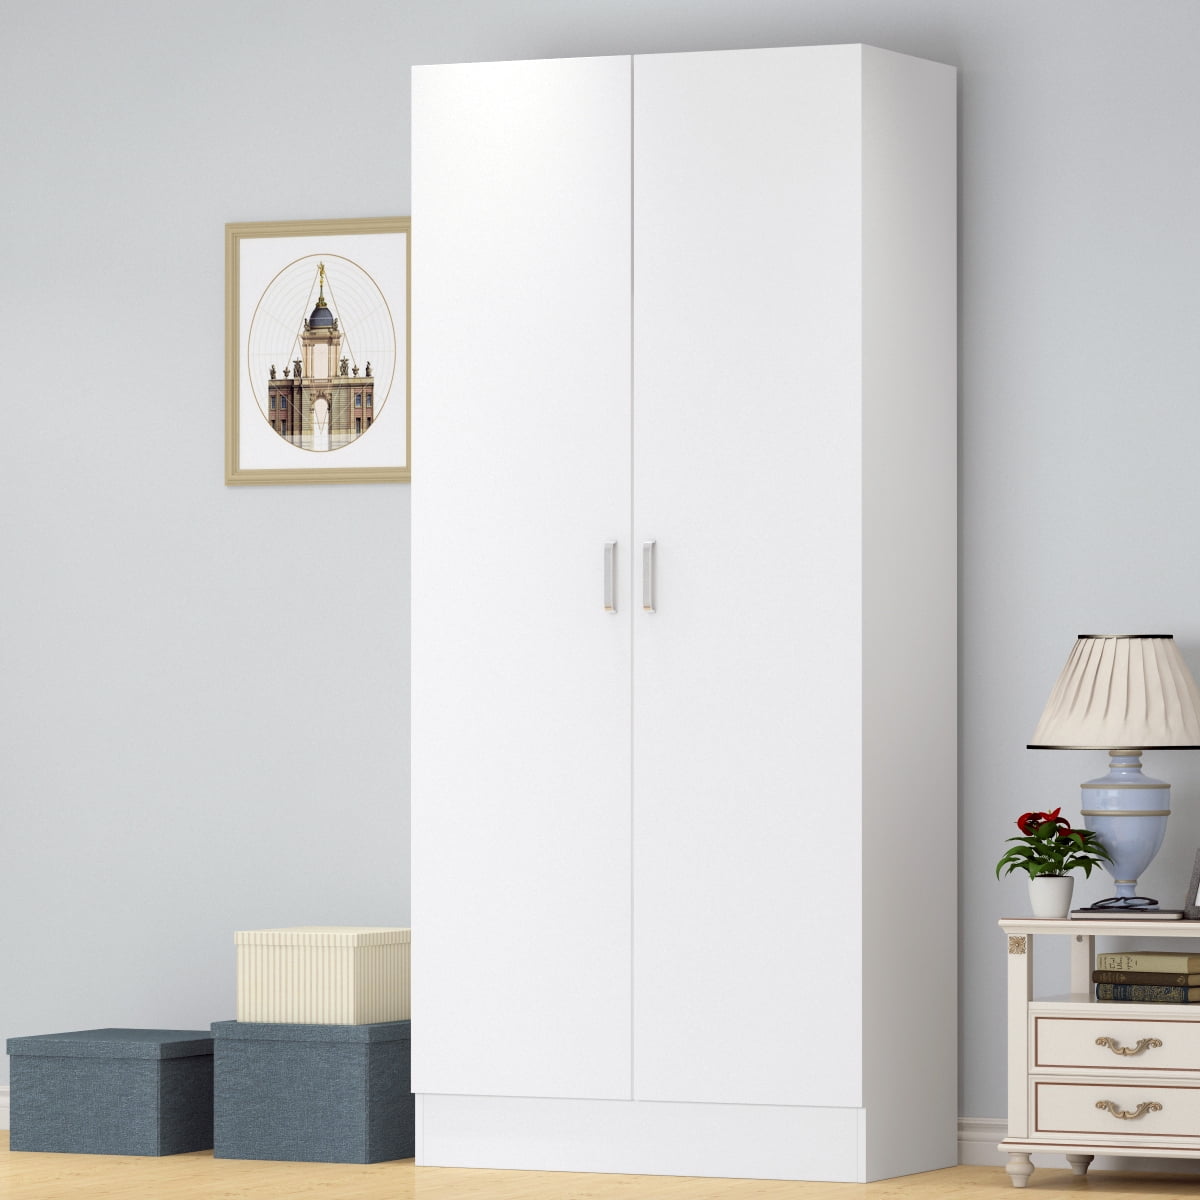 Details about   White Finish Armoire Wooden Wardrobe Storage Cabinet Closet Drawer Organizer 